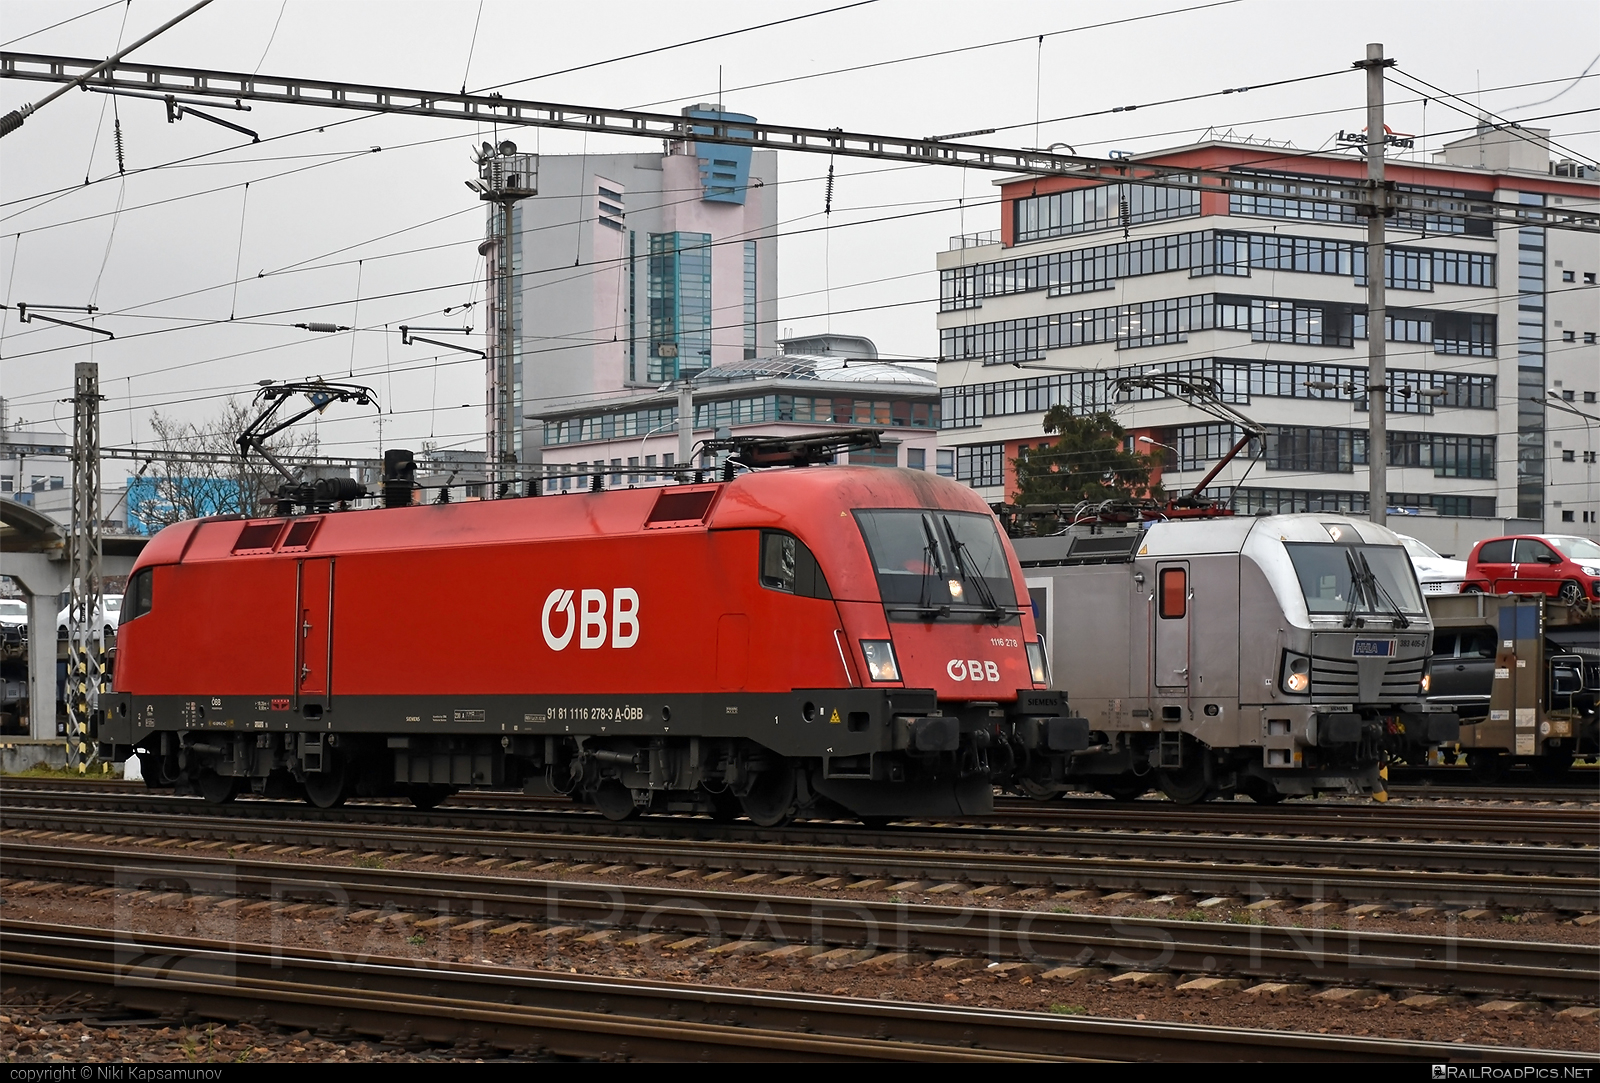 Siemens ES 64 U2 - 1116 278 operated by Rail Cargo Austria AG #es64 #es64u2 #eurosprinter #obb #osterreichischebundesbahnen #rcw #siemens #siemenses64 #siemenses64u2 #siemenstaurus #taurus #tauruslocomotive